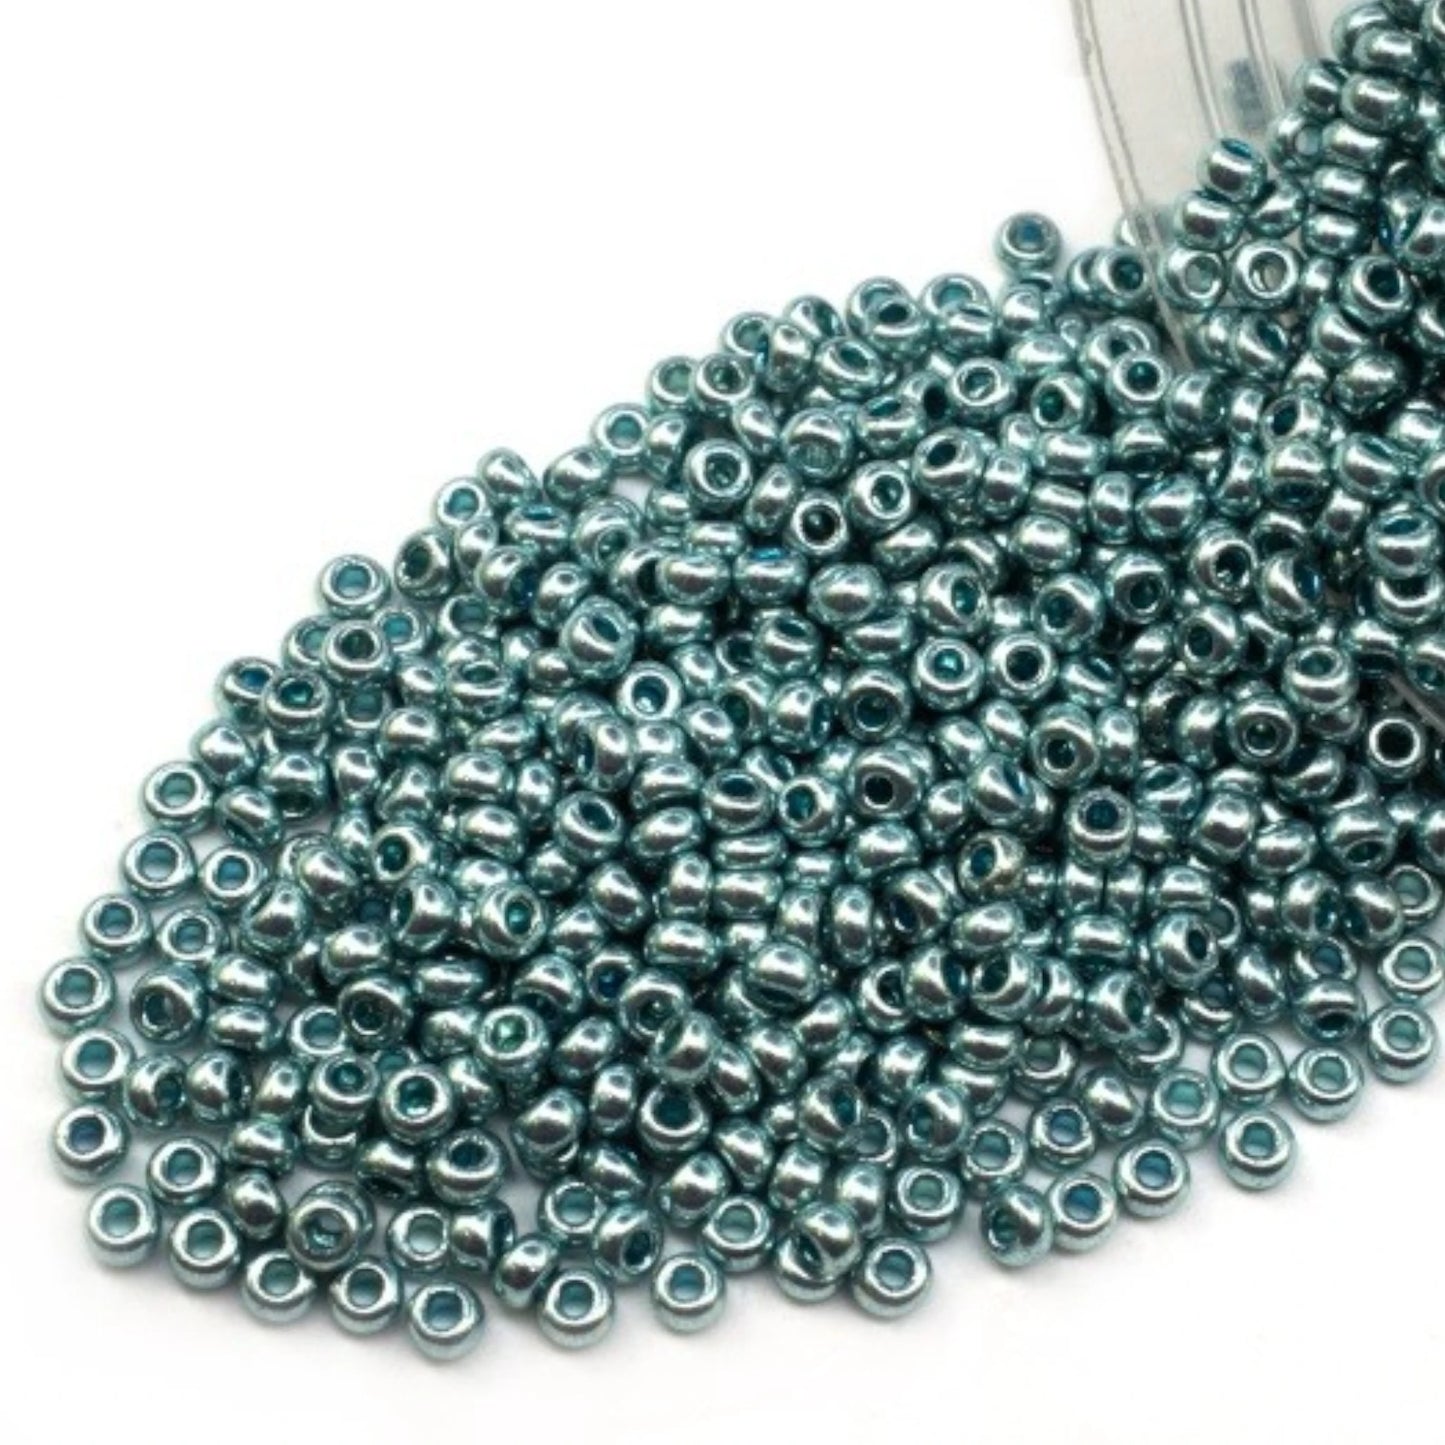 18134 Perles de rocailles tchèques PRECIOSA rondes 10/0 Turquoise métallisé. Métallique - Solgel.